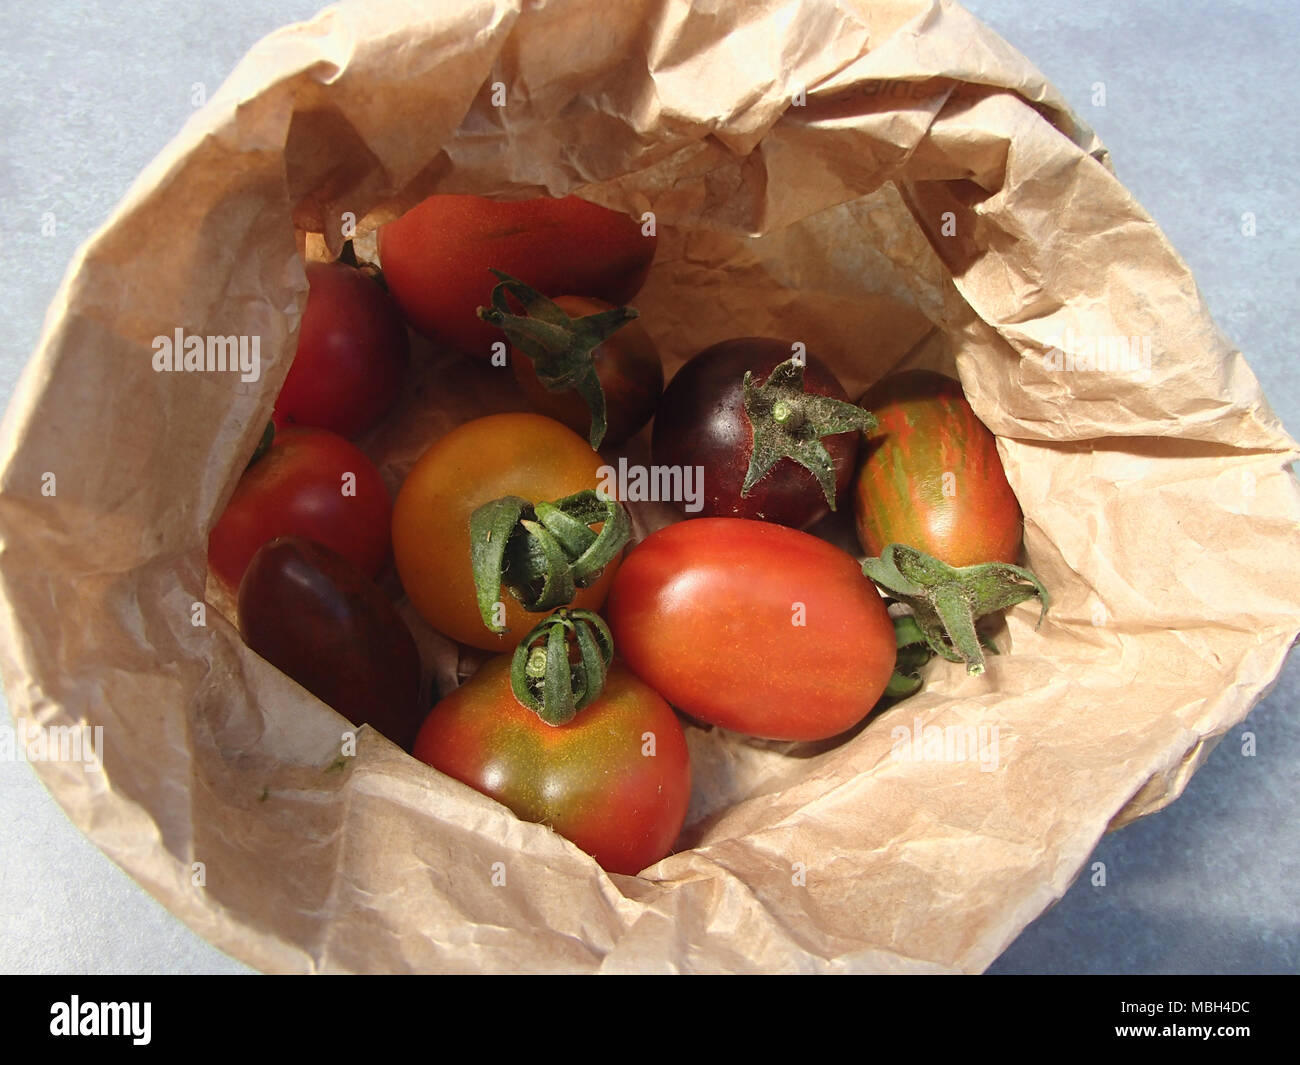 Organici di pomodorini in una carta marrone Foto Stock